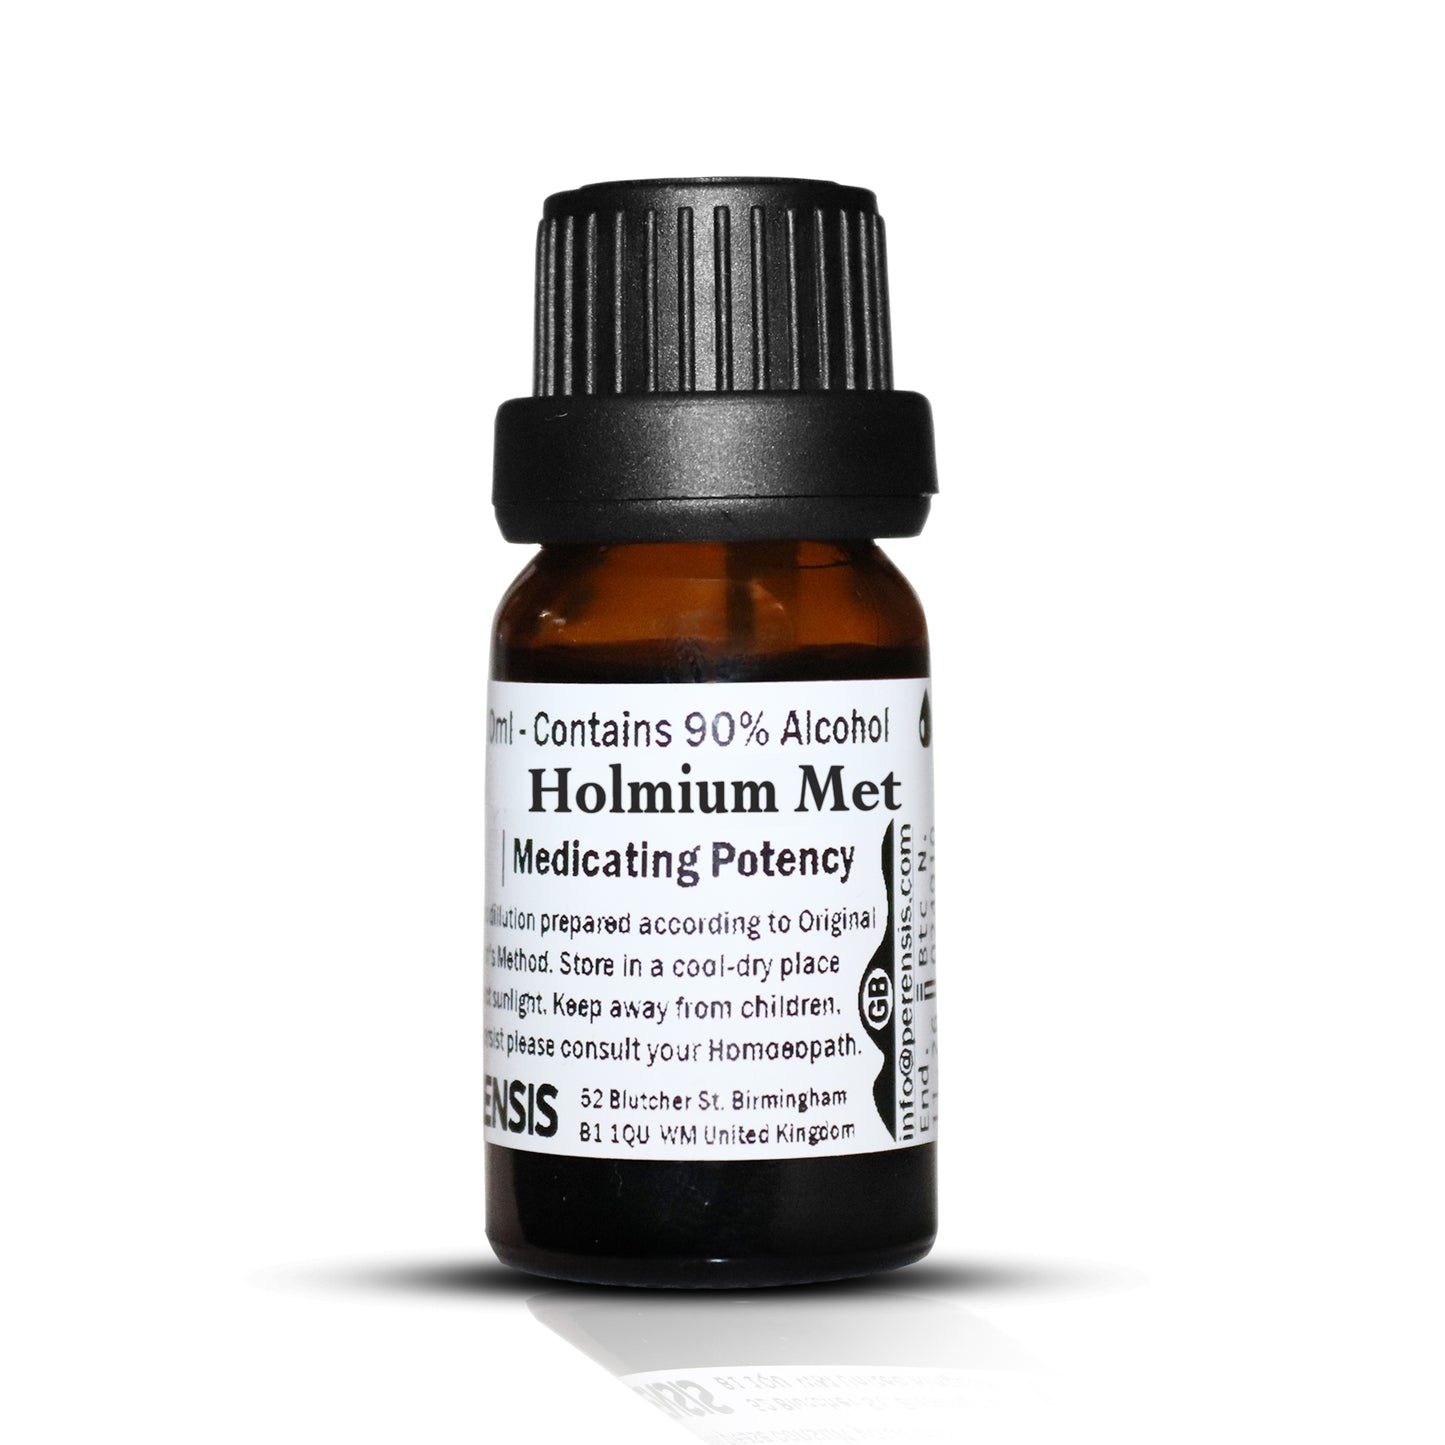 Holmium Met